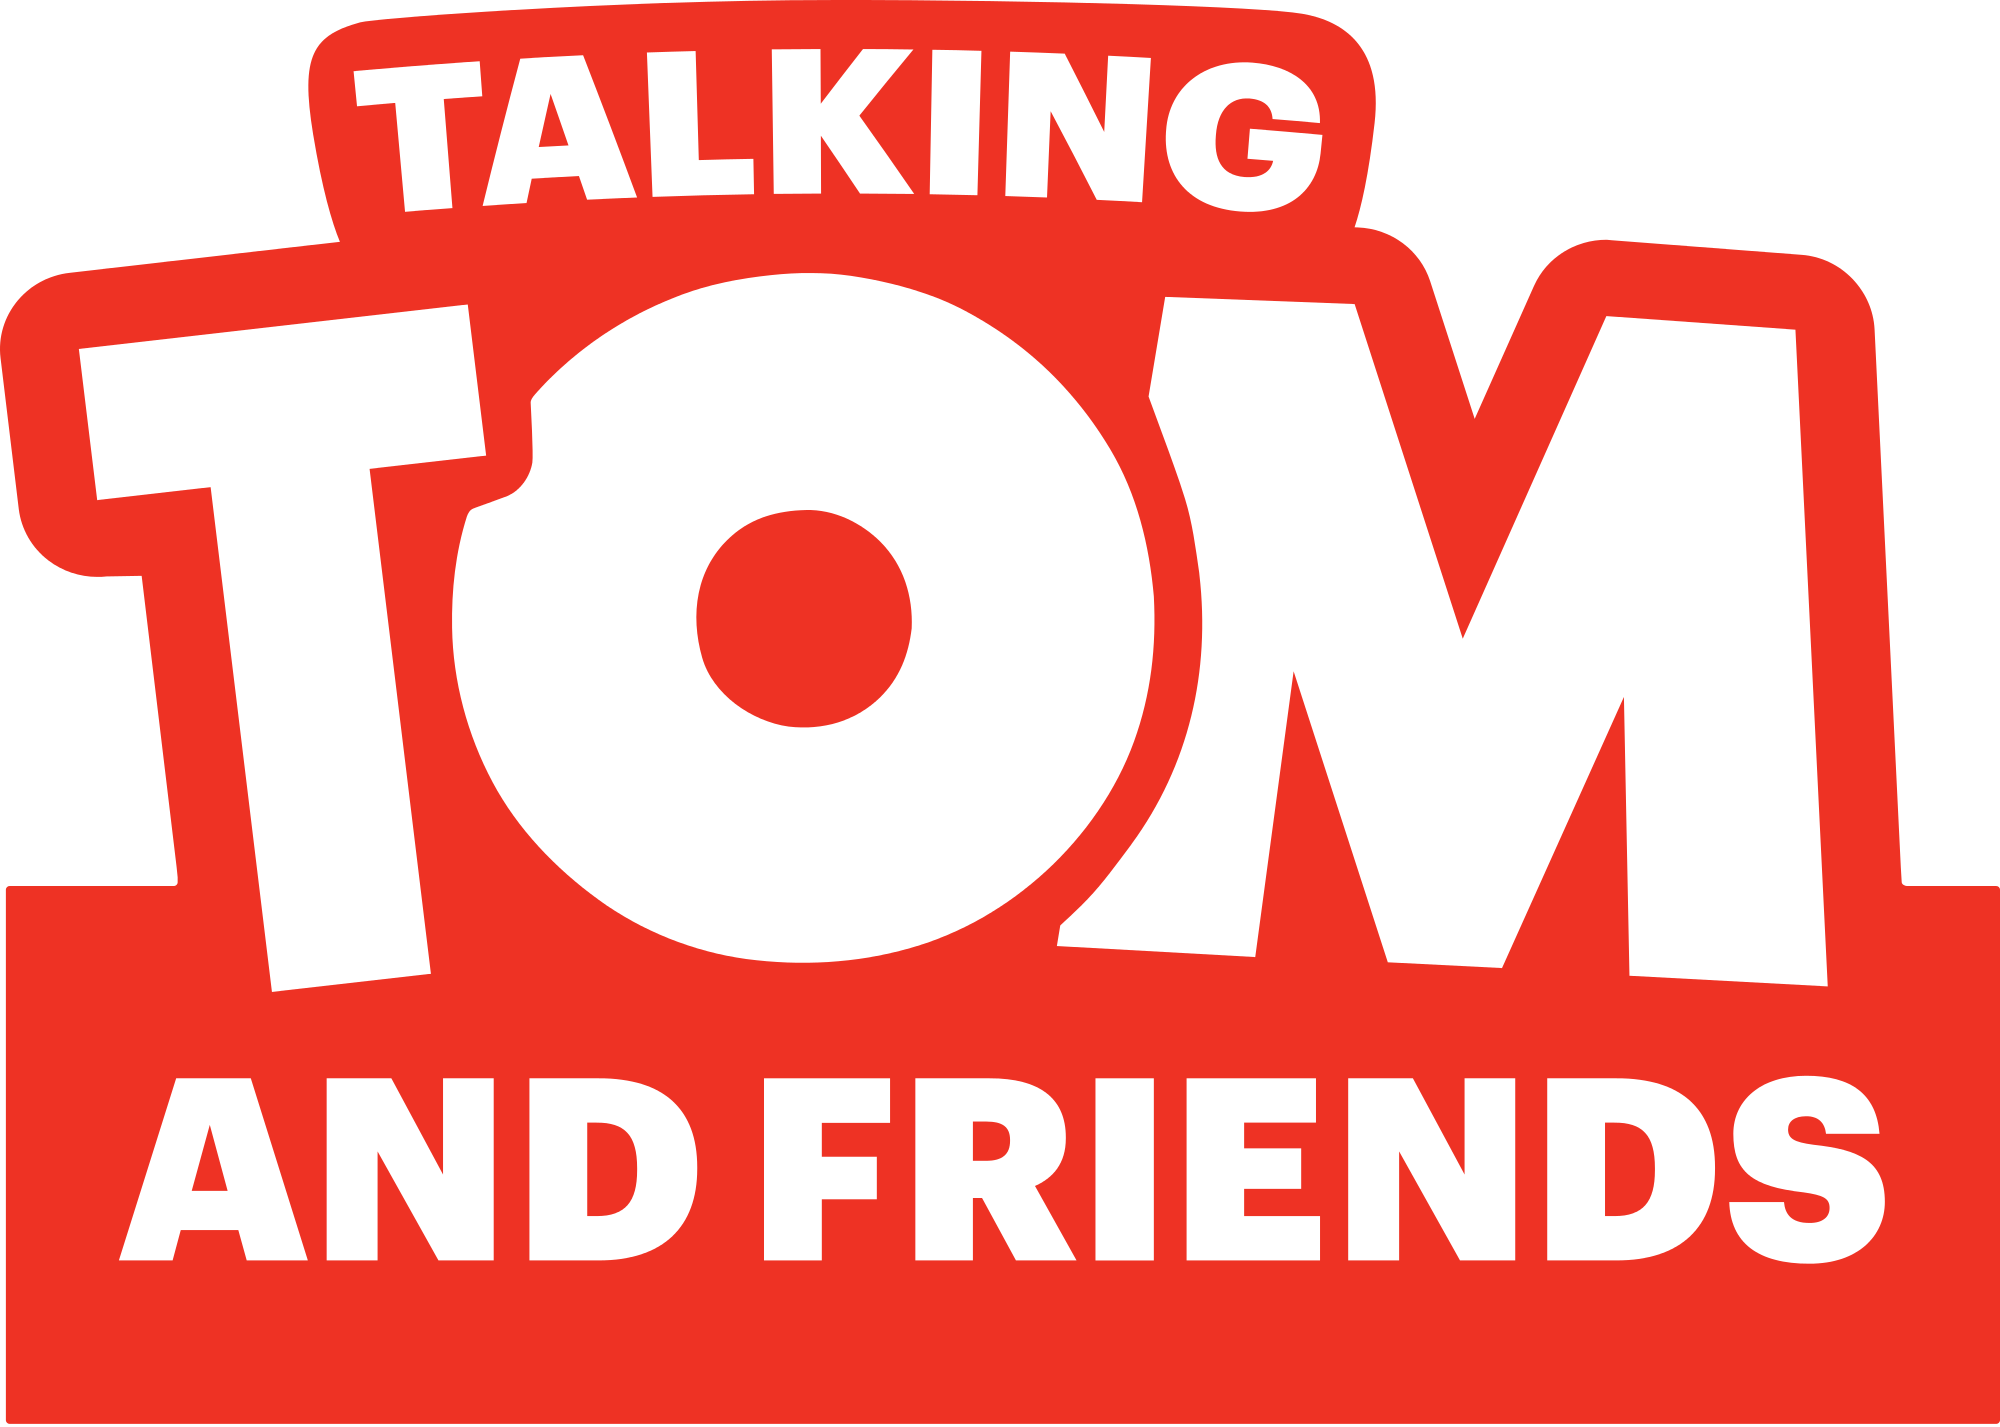 Talking Tom and Friends Crosses 3 Billion Downloads #talkingfriends